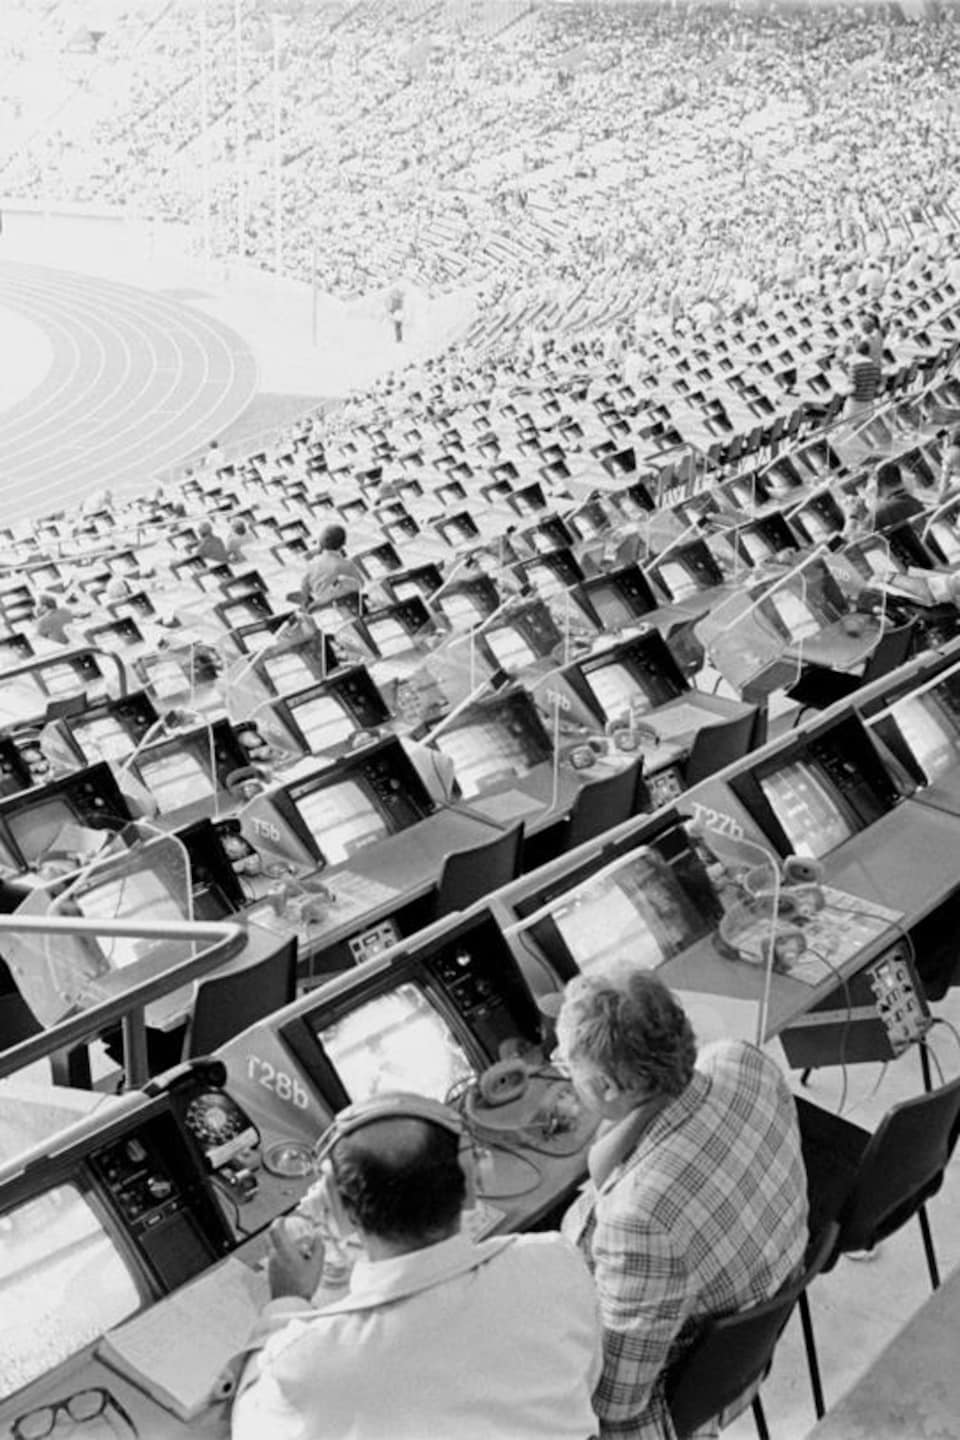 Vue générale des gradins et des tribunes du stade olympique avec quelques commentateurs assis à leur consolette.